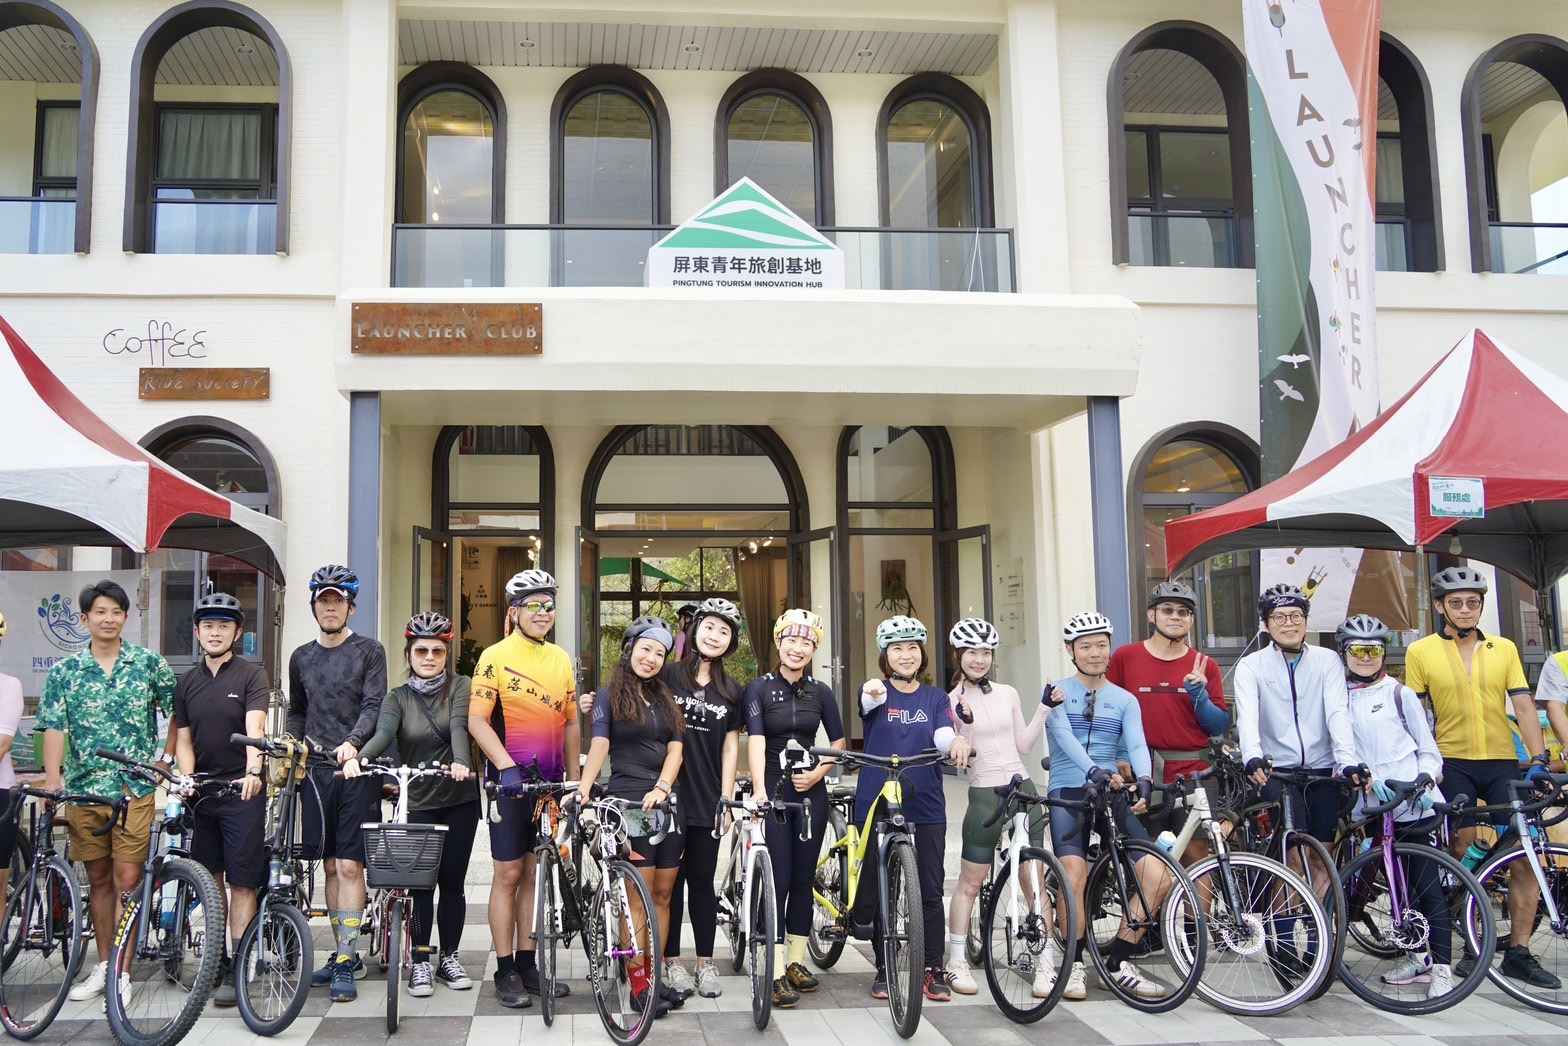 Chính quyền huyện Bình Đông mời Youtuber là những tay đạp xe nổi tiếng tham gia hoạt động quảng bá du lịch tại địa phương. (Ảnh: Chính quyền huyện Bình Đông)